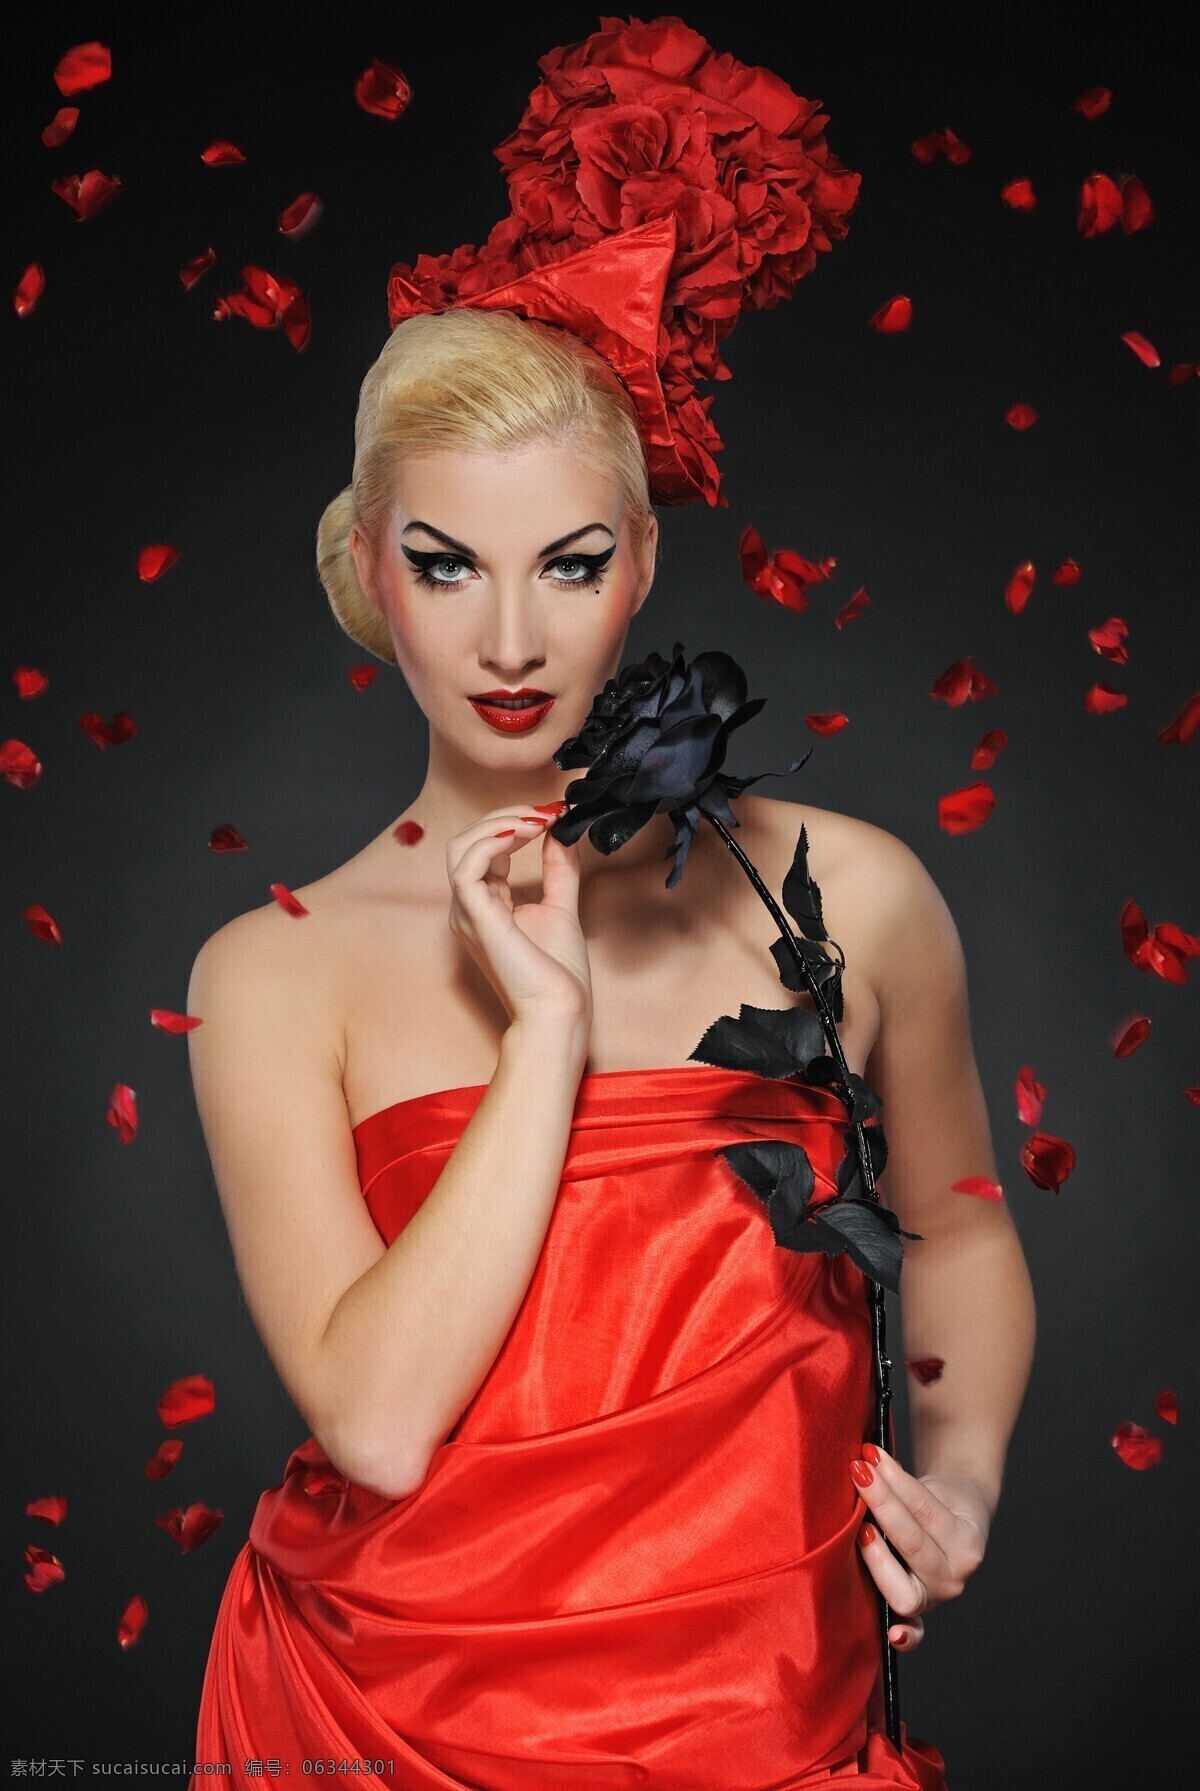 美女 红衣美女 黑玫瑰 化妆 花瓣 香肩 长发 金发 发型 发型设计 人物素材 女性女人 人物图库